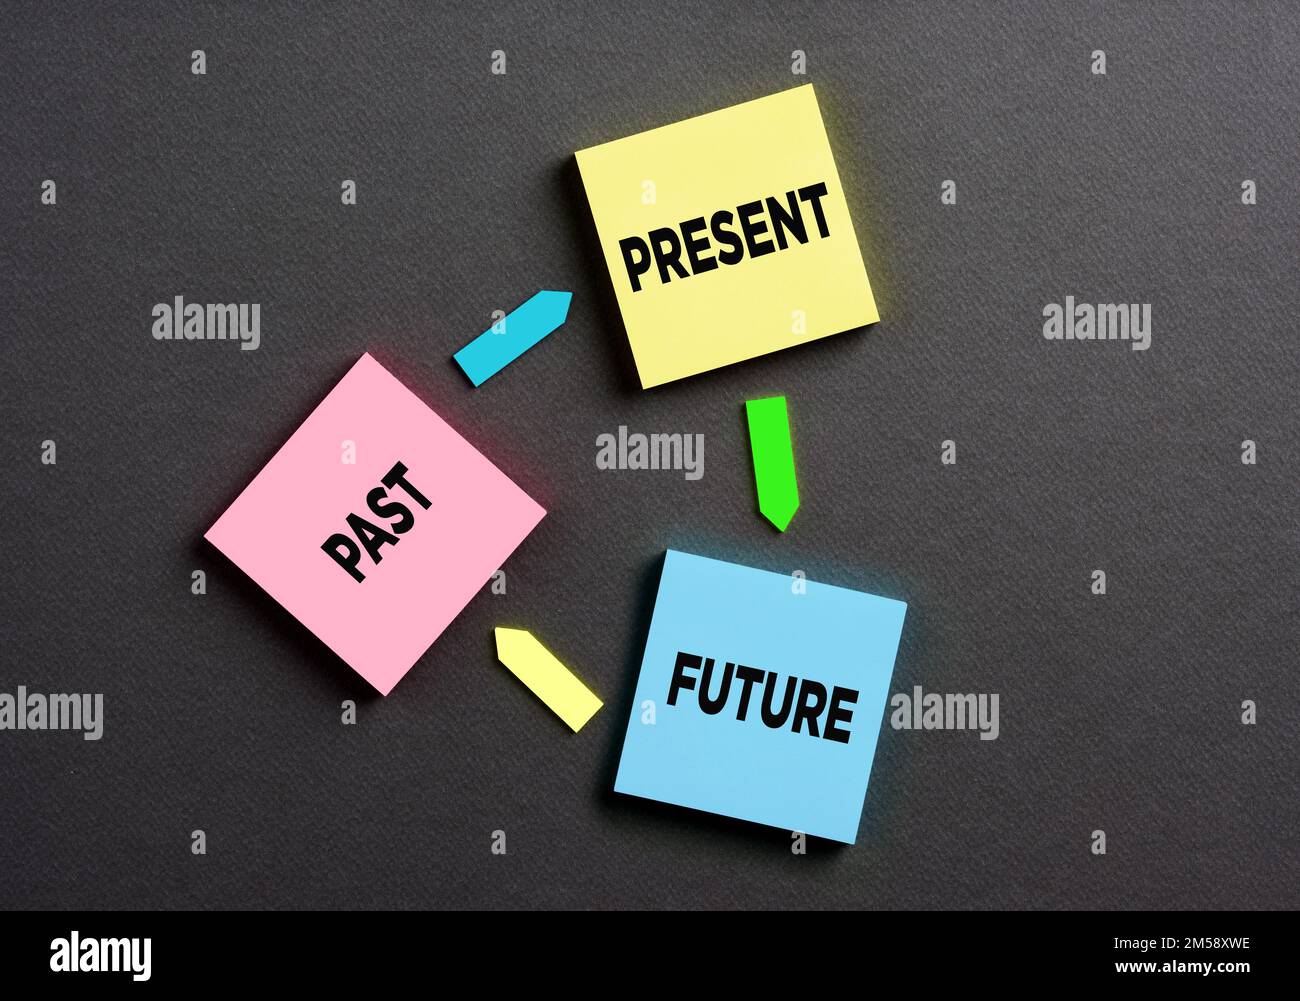 Passato, presente e futuro legati in un circolo vizioso del tempo. Carte note colorate con le parole passato, presente e futuro collegate con frecce. Foto Stock